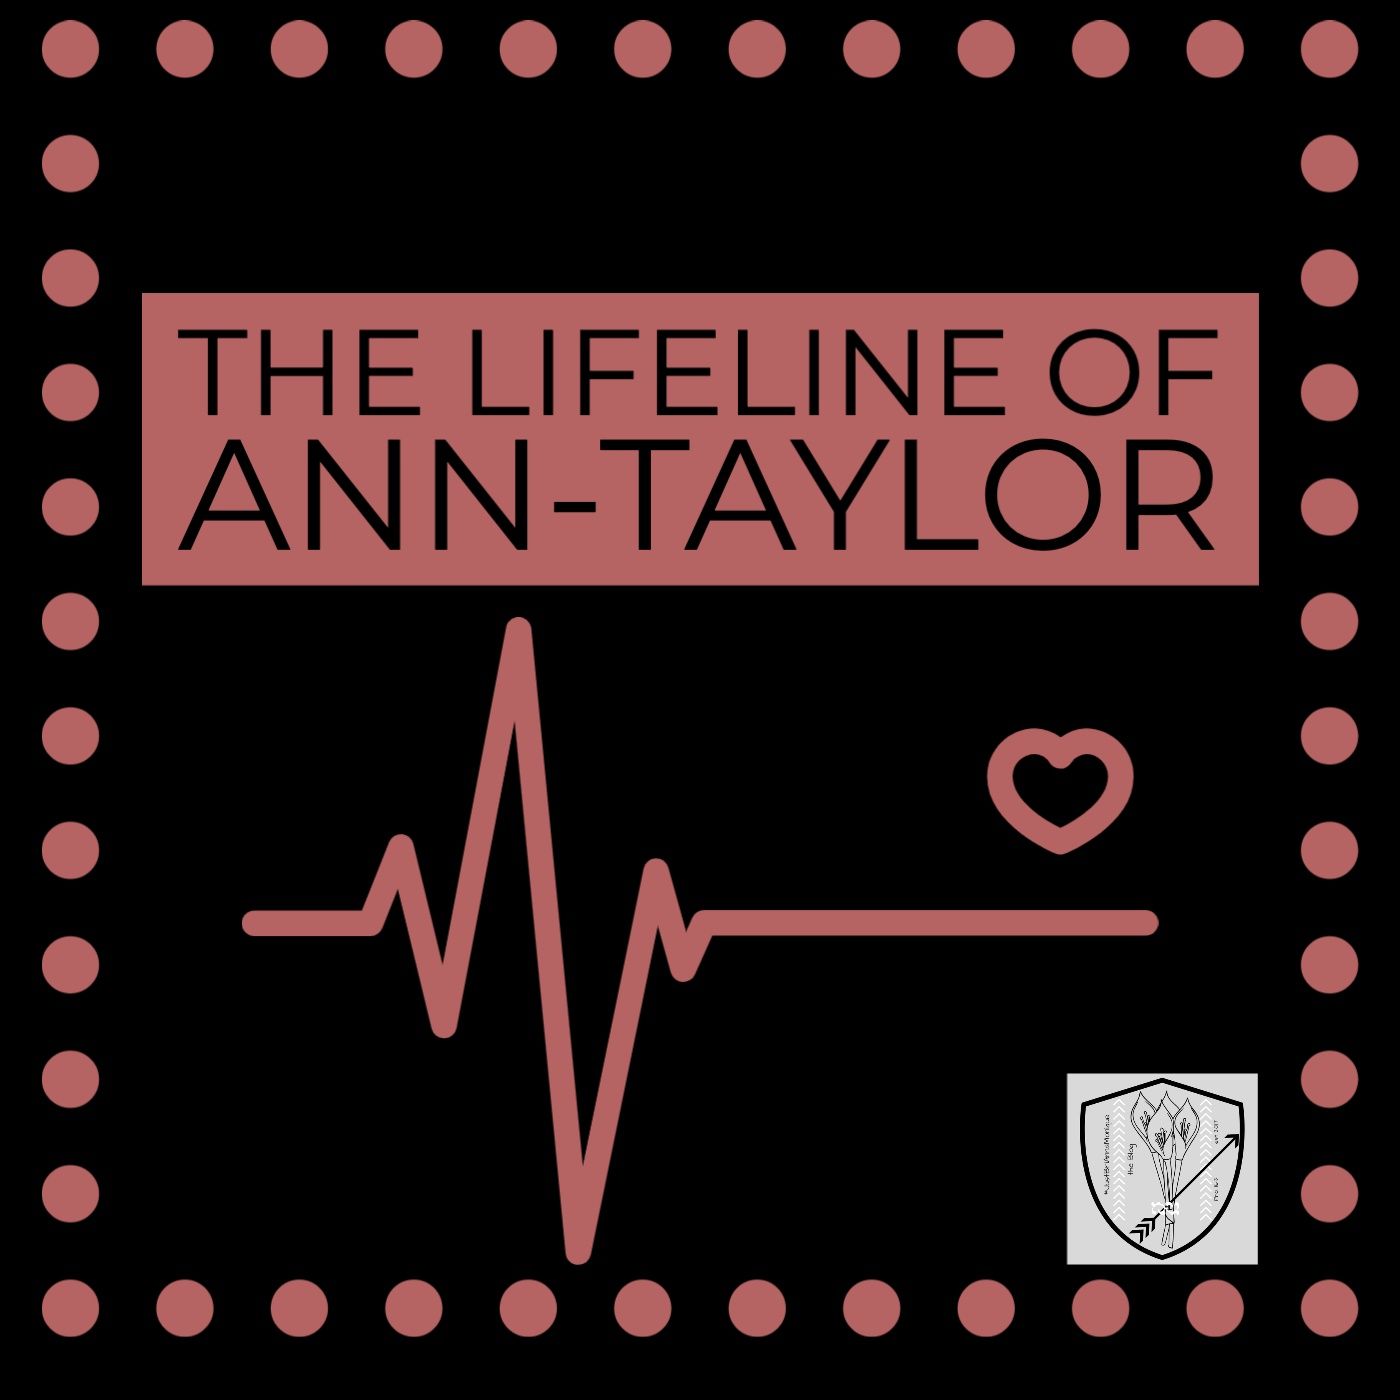 The Lifeline of Ann-Taylor